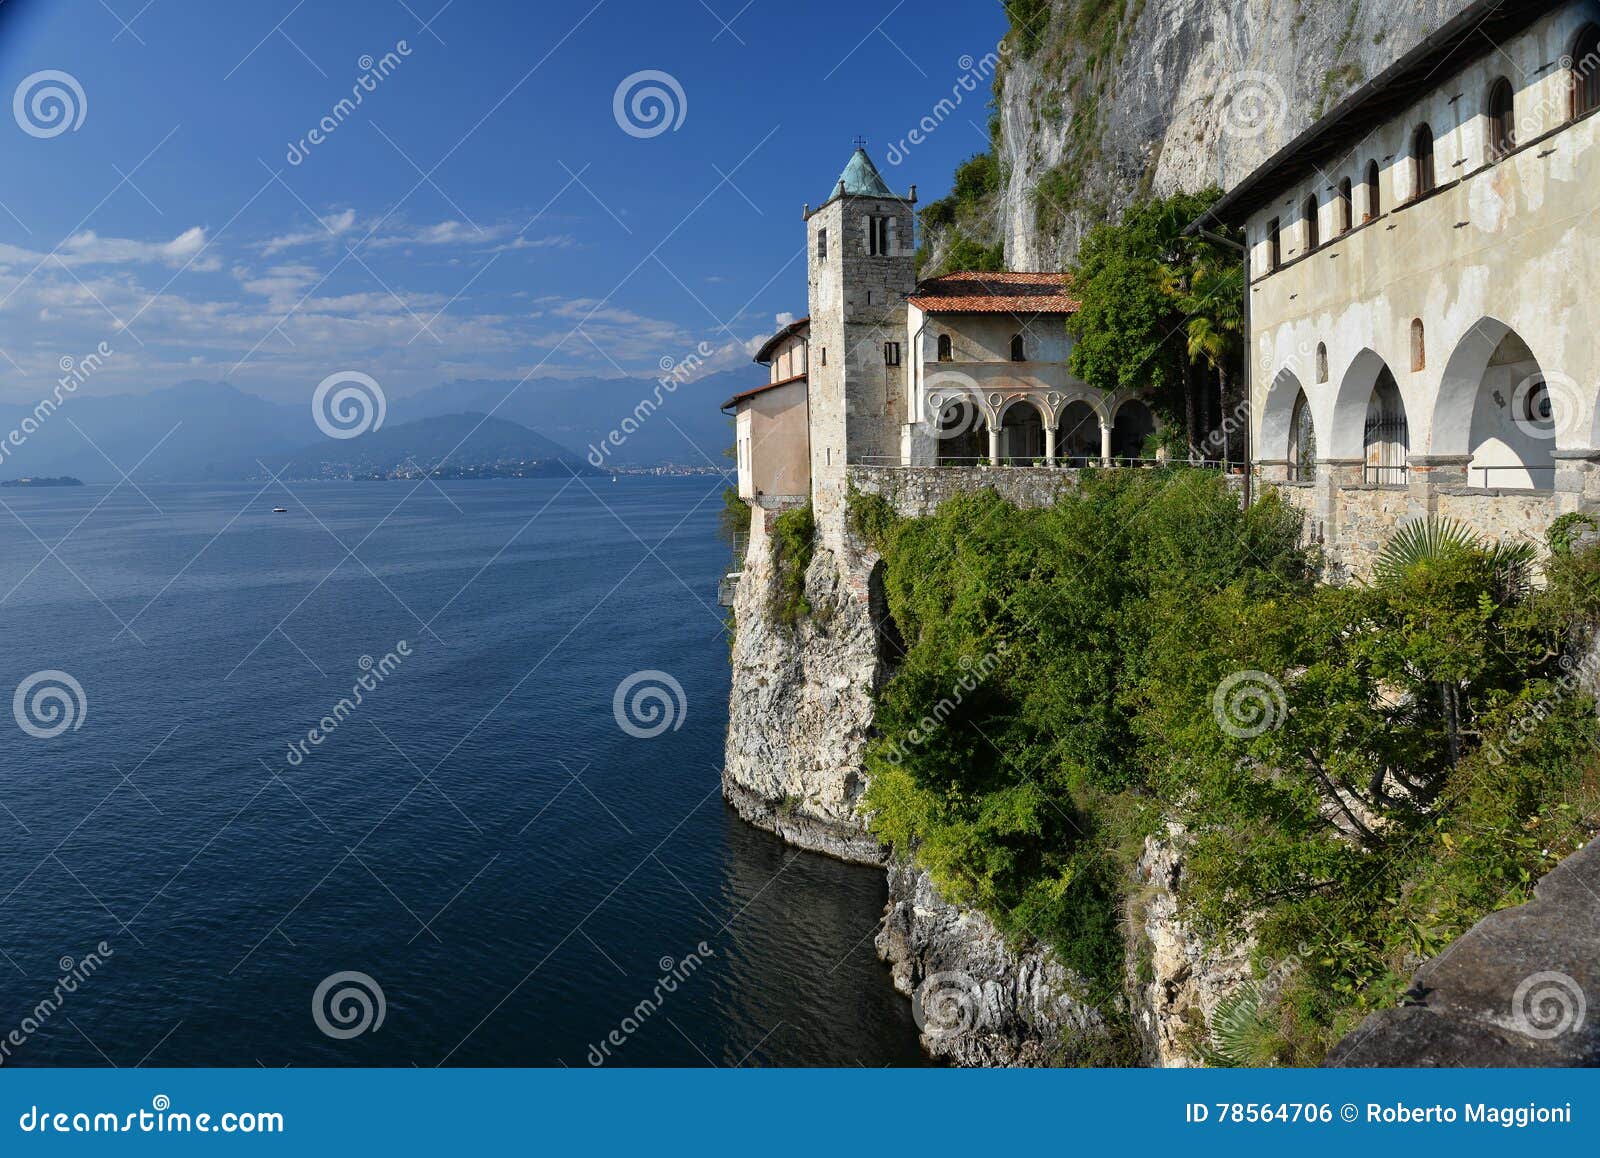 lake - lago - maggiore, italy. santa caterina del sasso monastery